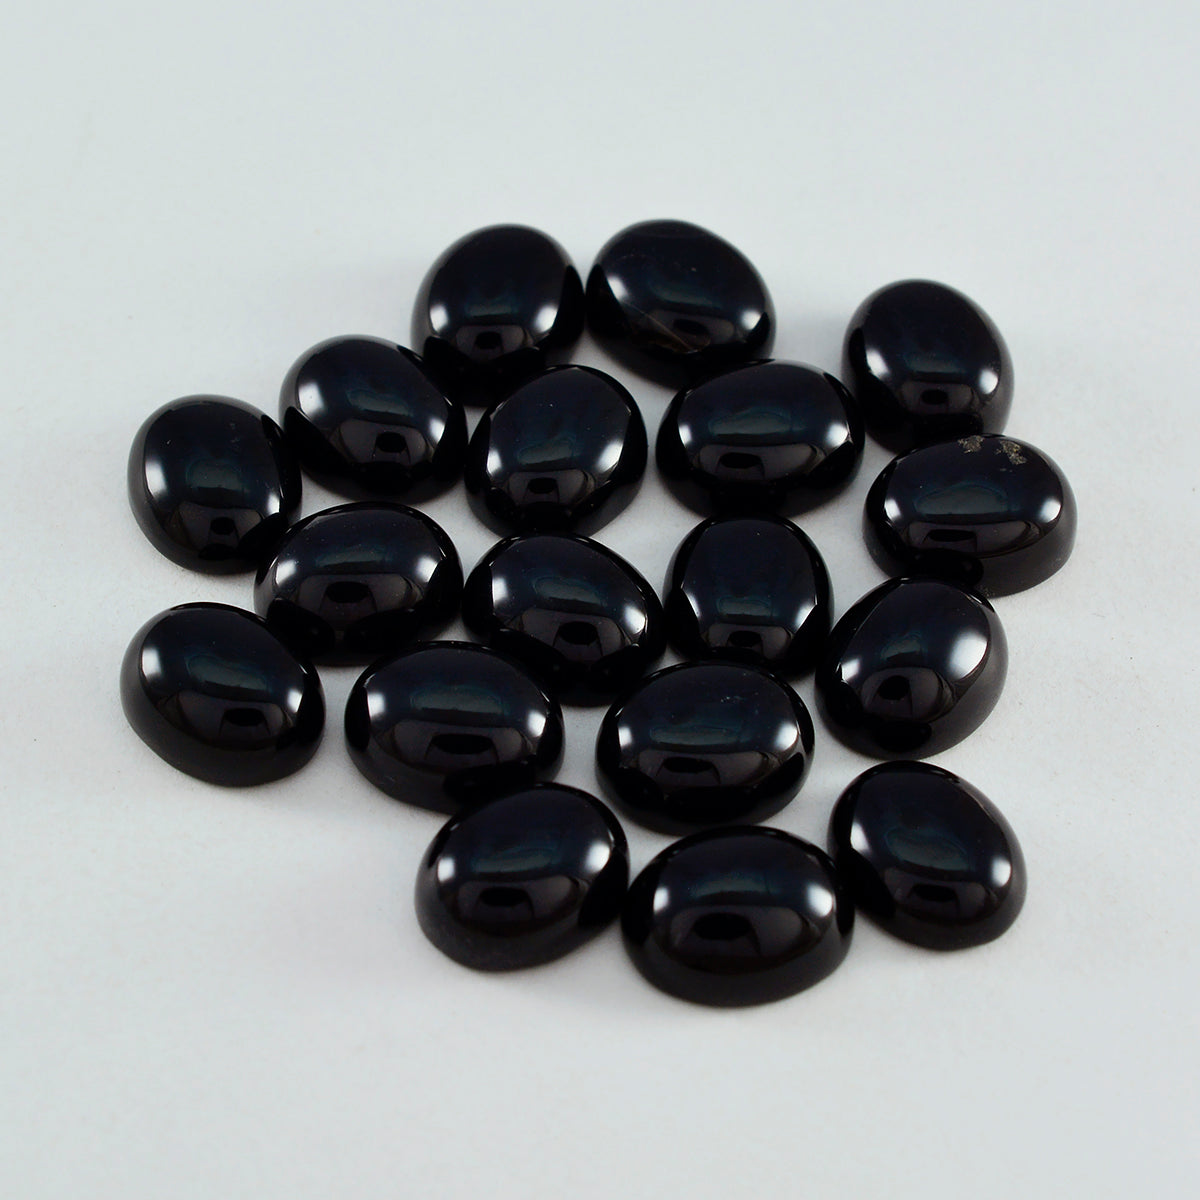 Riyogems 1 Stück schwarzer Onyx-Cabochon, 5 x 7 mm, ovale Form, schöner Qualitätsstein